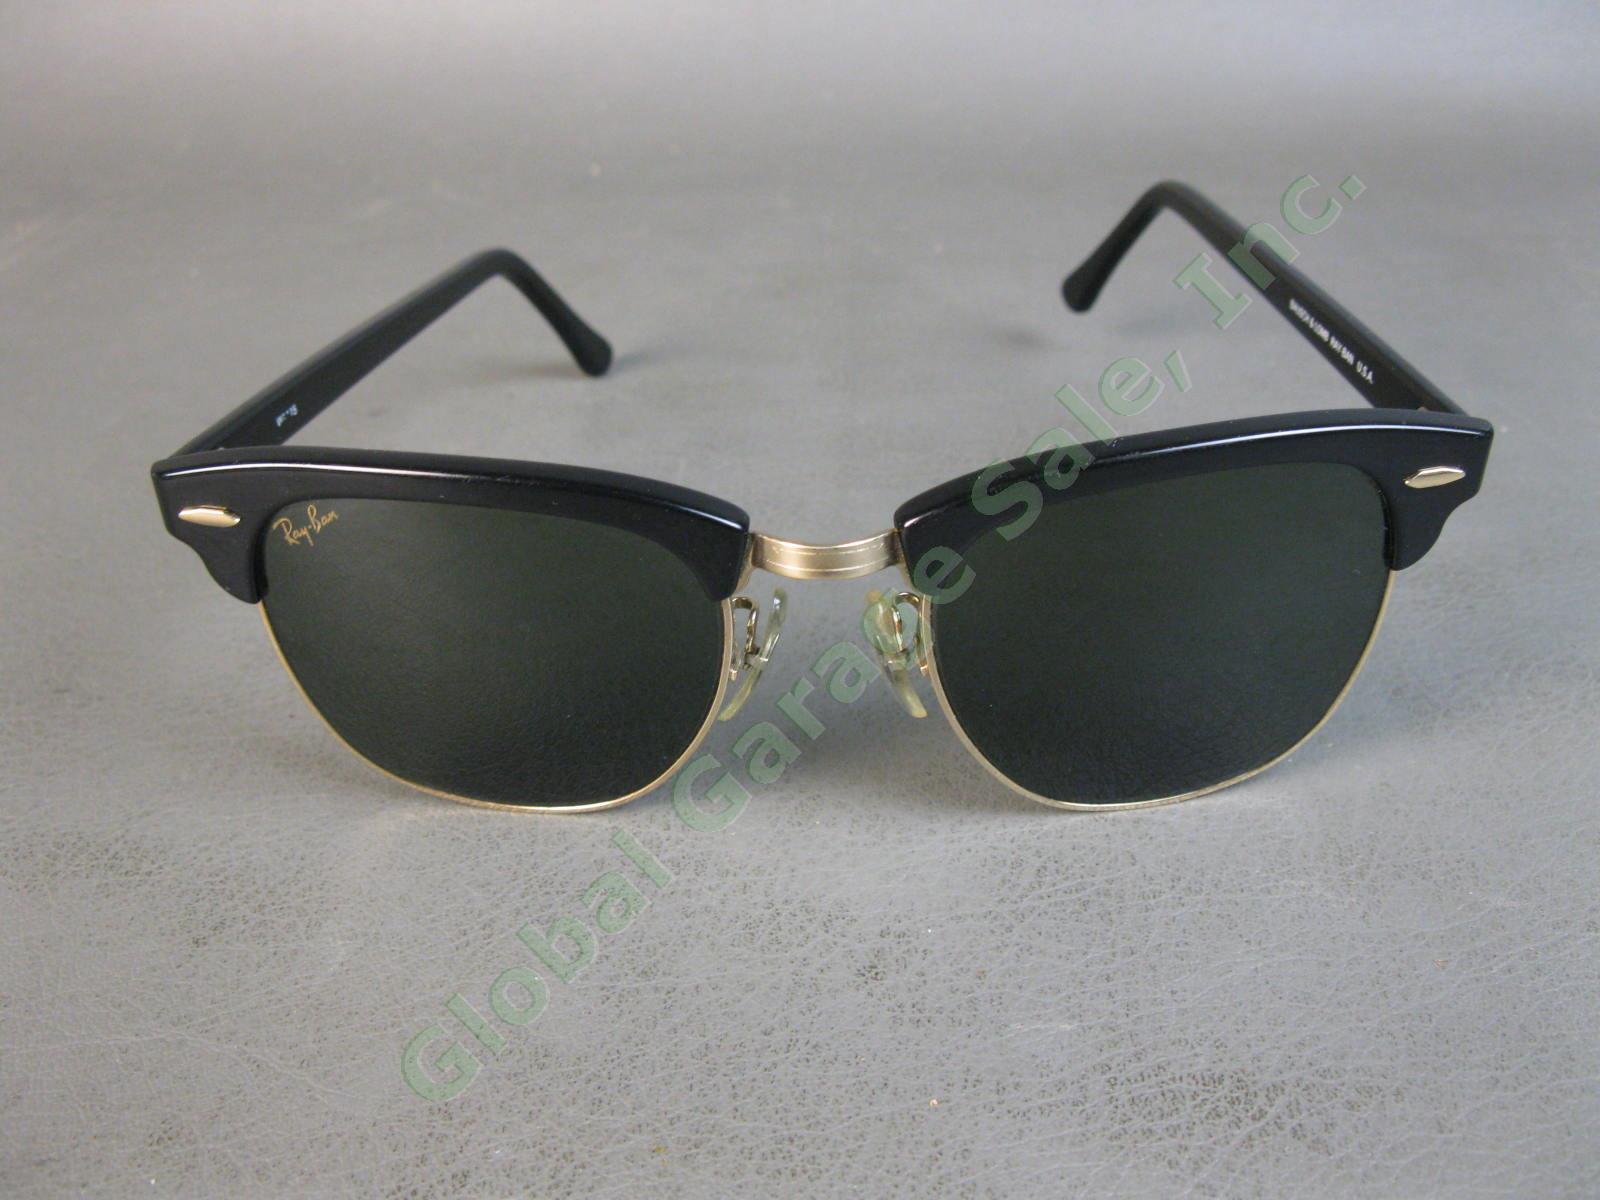 VTG B&L Ray-Ban ClubMaster Sunglasses Arista Ebony W1115 G15 RB3016 Bausch Lomb 2